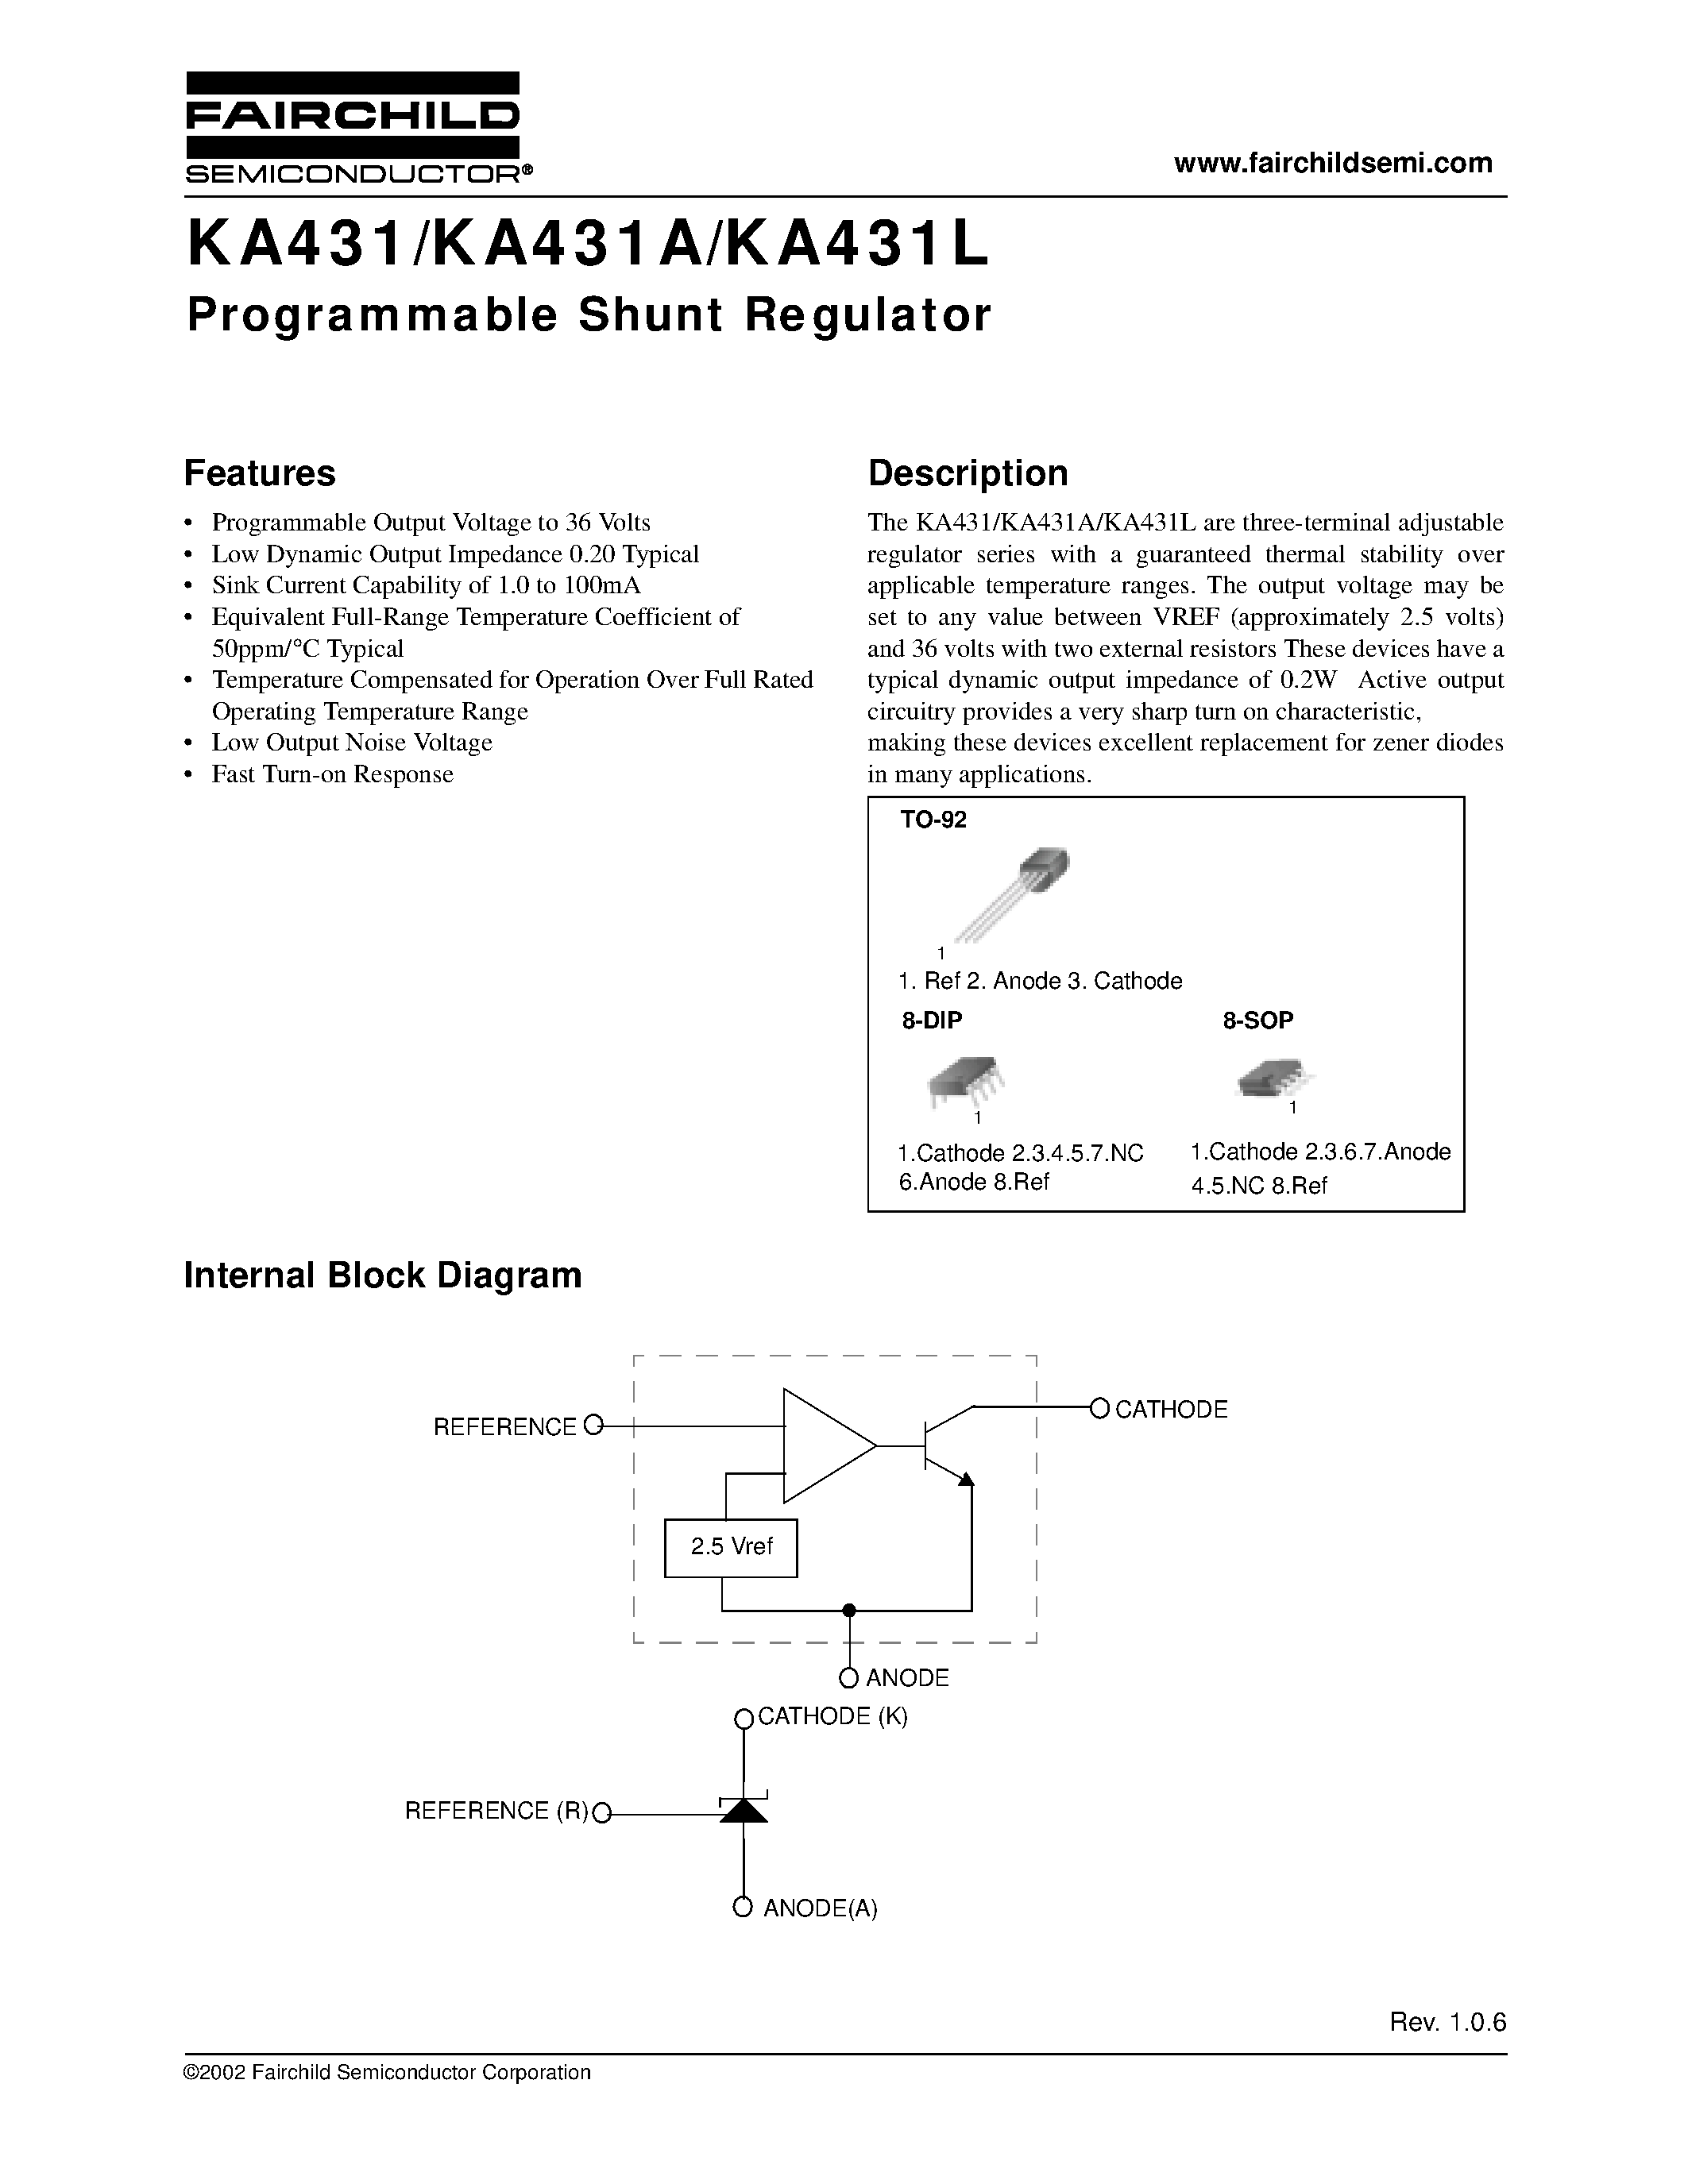 Даташит KA431LZ - Programmable Shunt Regulator страница 1